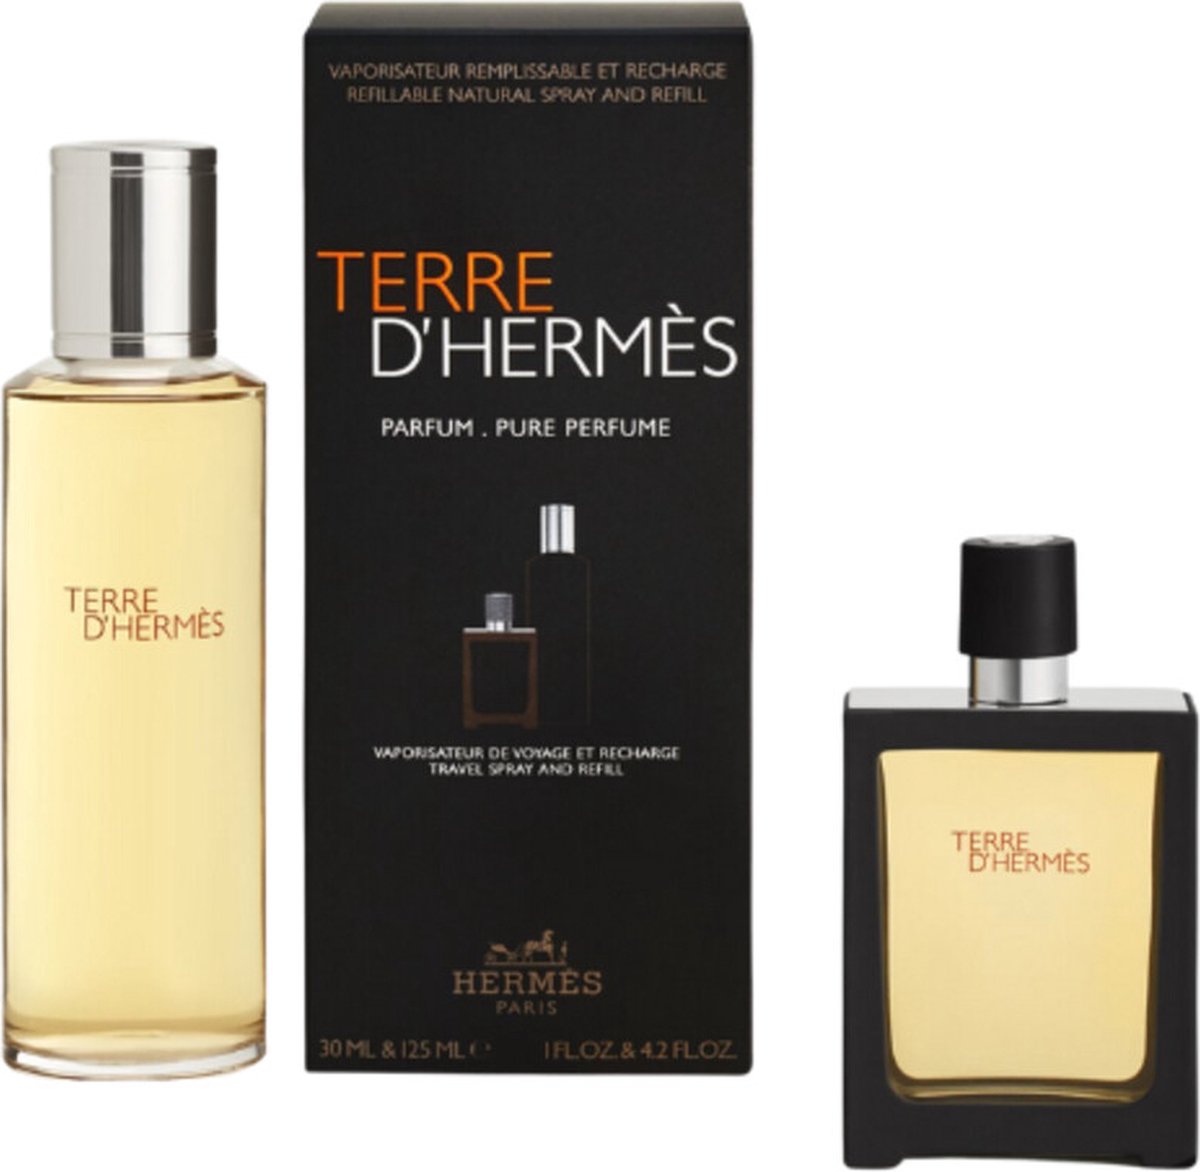 Hermes Terre d'Hermes Giftset 155 ml